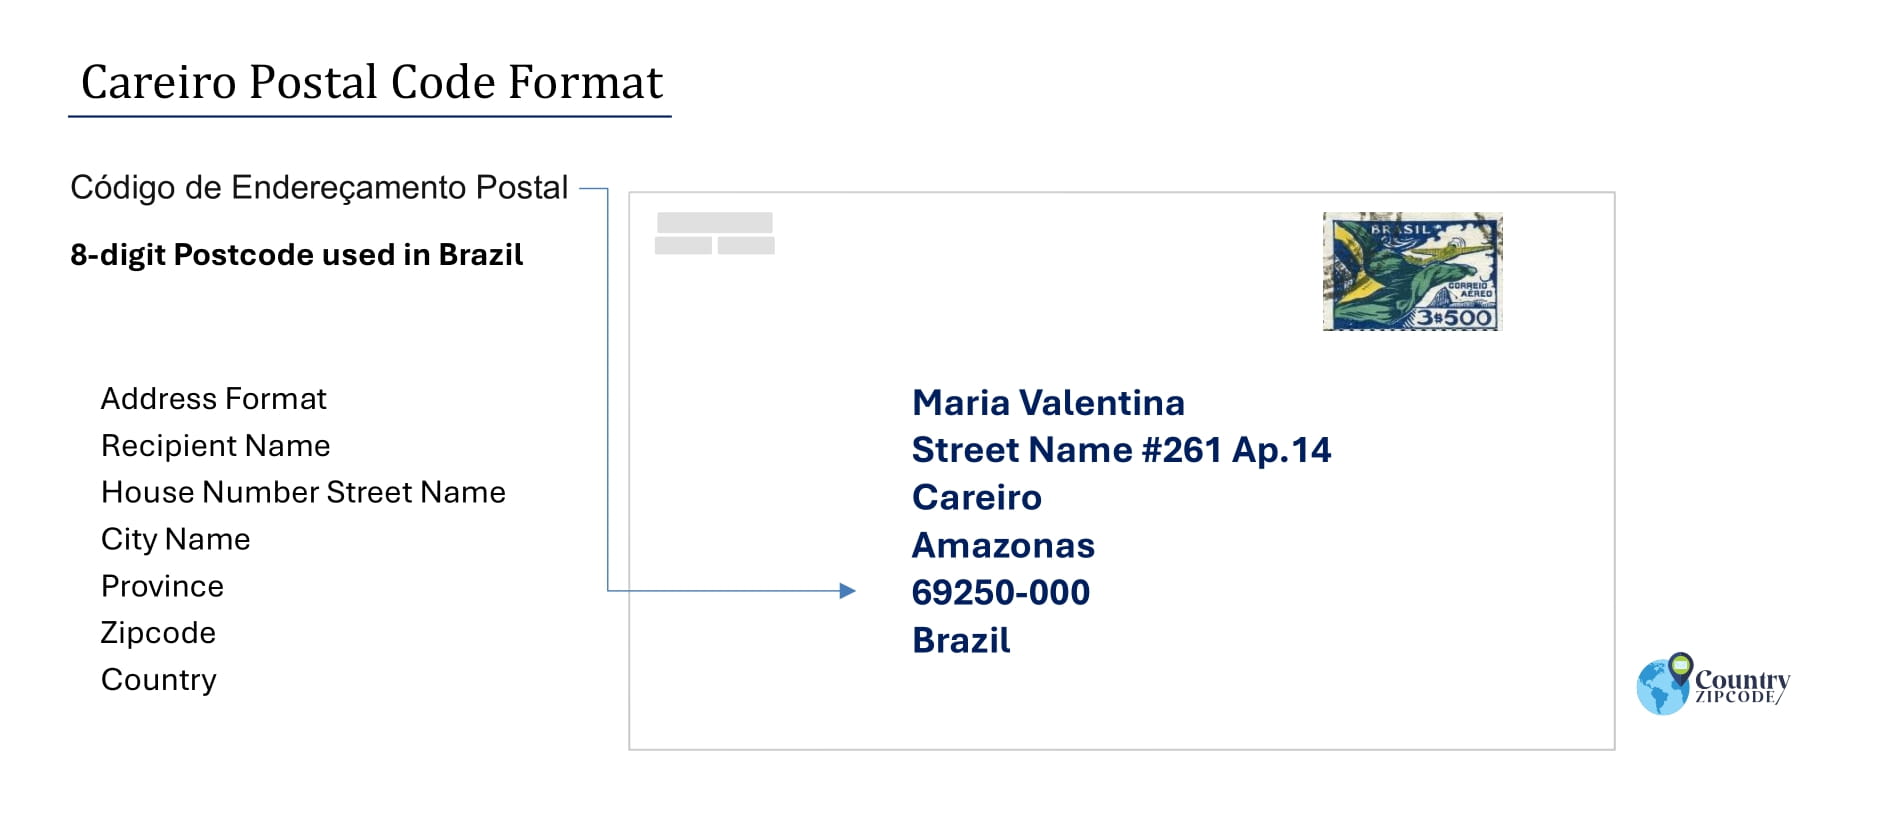 Example of Codigo de Enderecamento Postal and Address format of Careiro Brazil